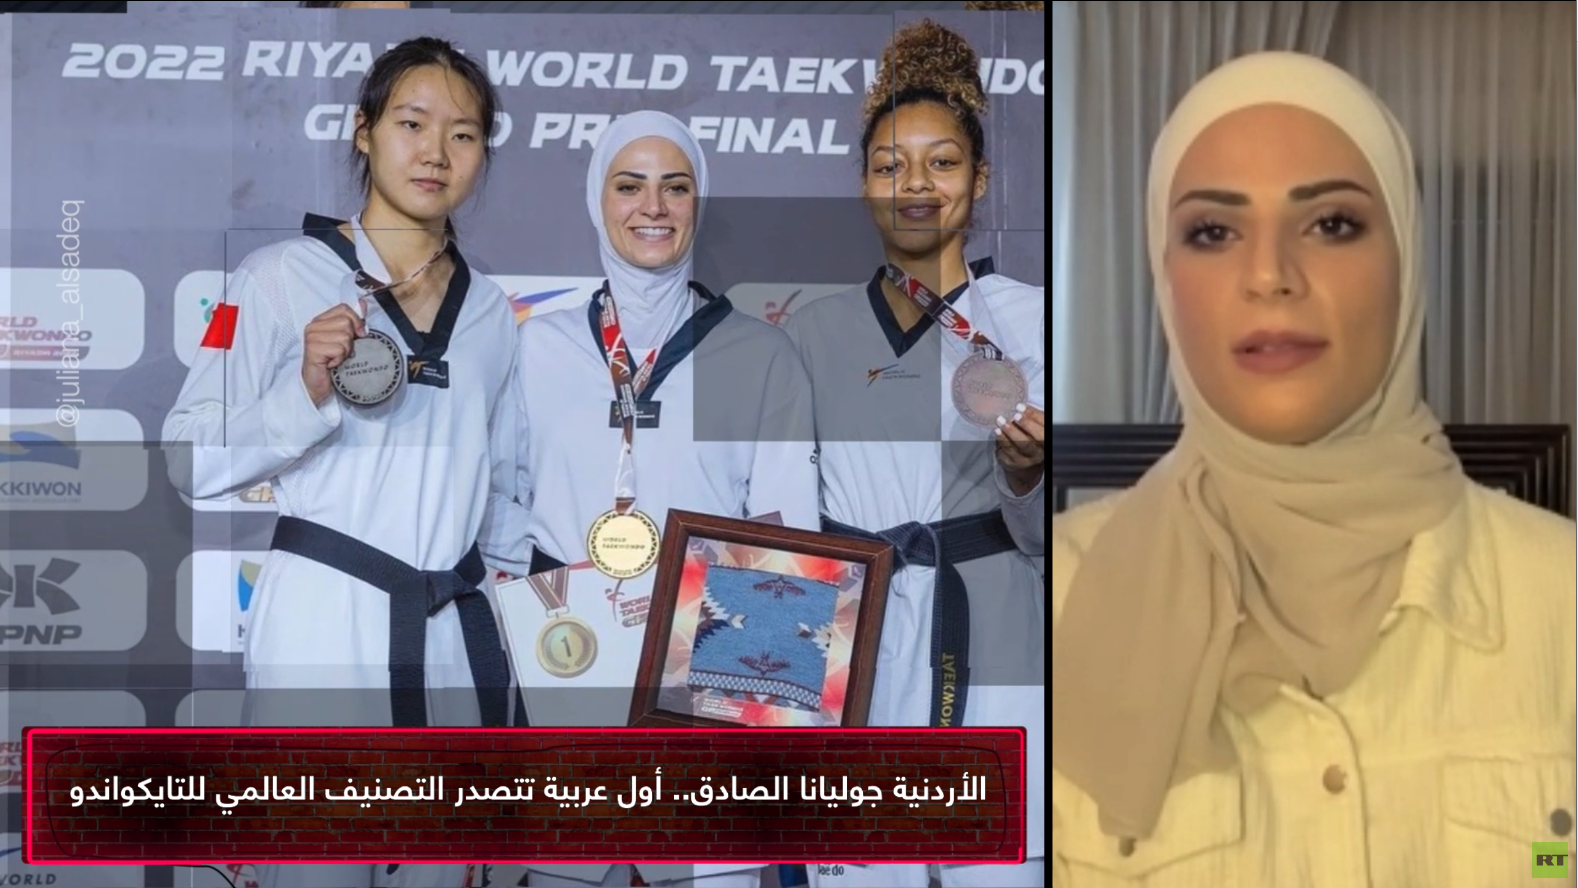 الأردنية جوليانا الصادق أول عربية تتصدر التصنيف العالمي لرياضة التايكواندو